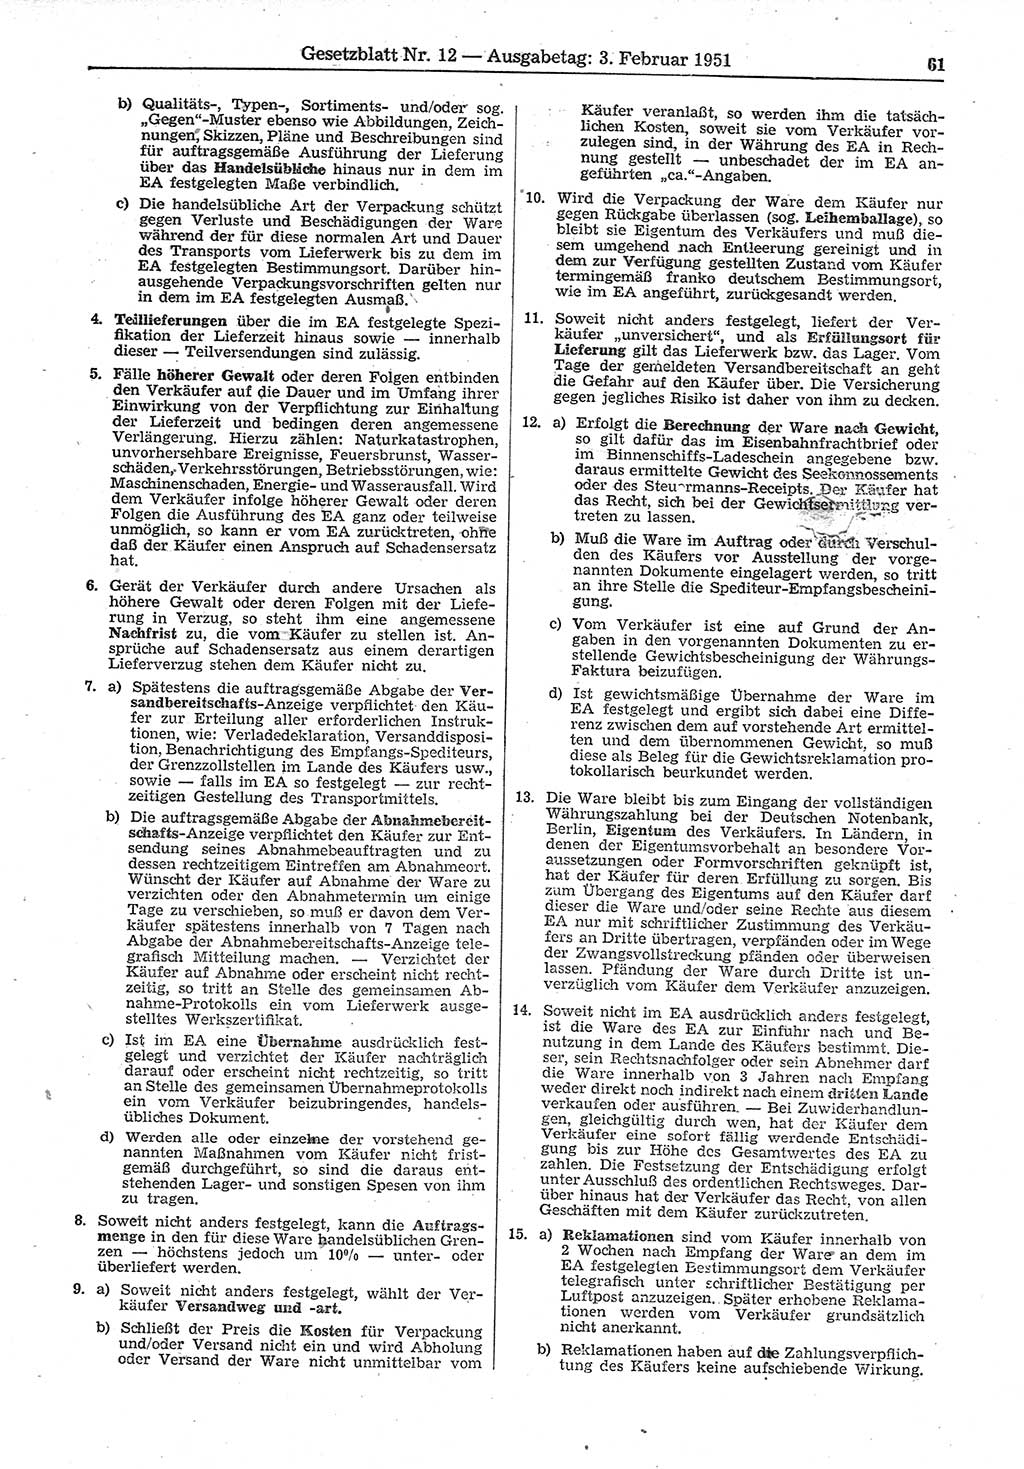 Gesetzblatt (GBl.) der Deutschen Demokratischen Republik (DDR) 1951, Seite 61 (GBl. DDR 1951, S. 61)